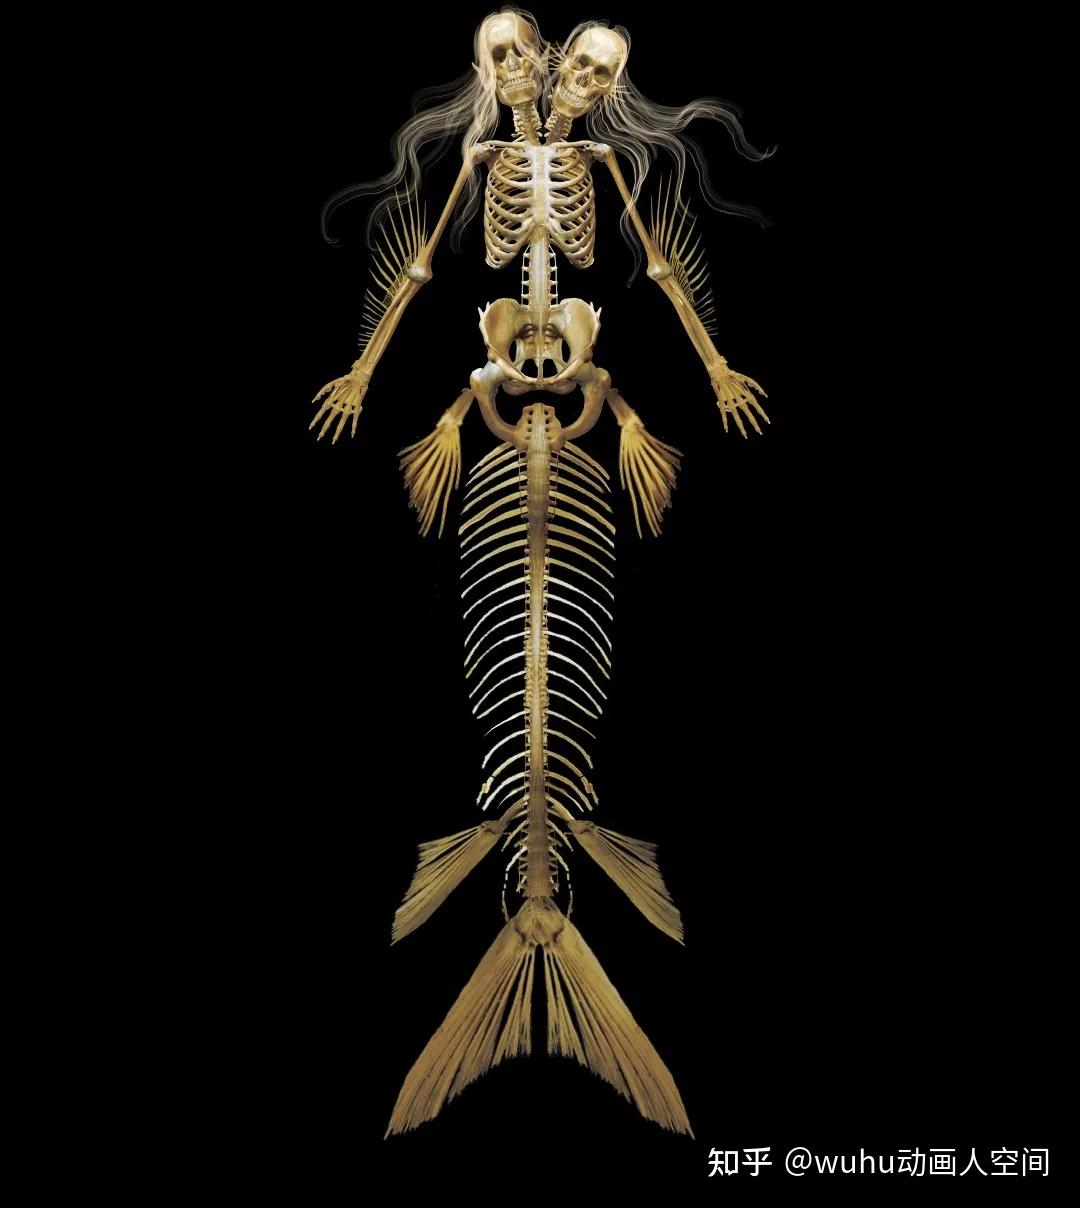 最后说一说那张美人鱼骨骼,也是与网友最有争议的一幅作品